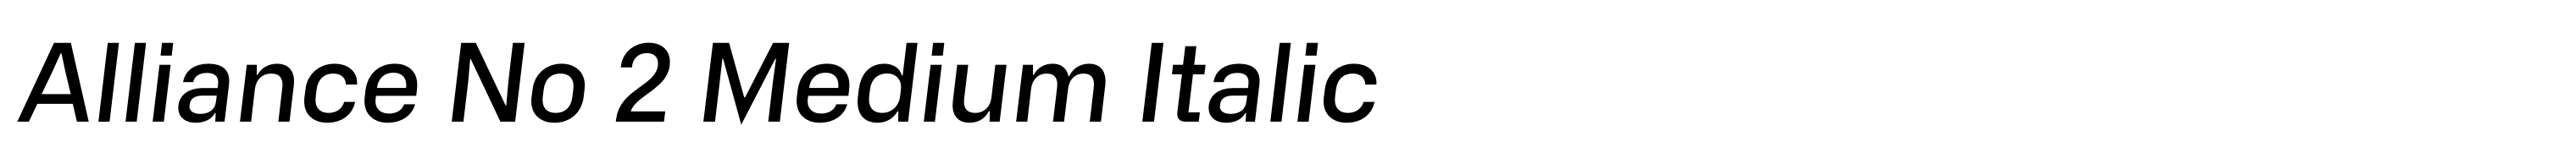 Alliance No 2 Medium Italic